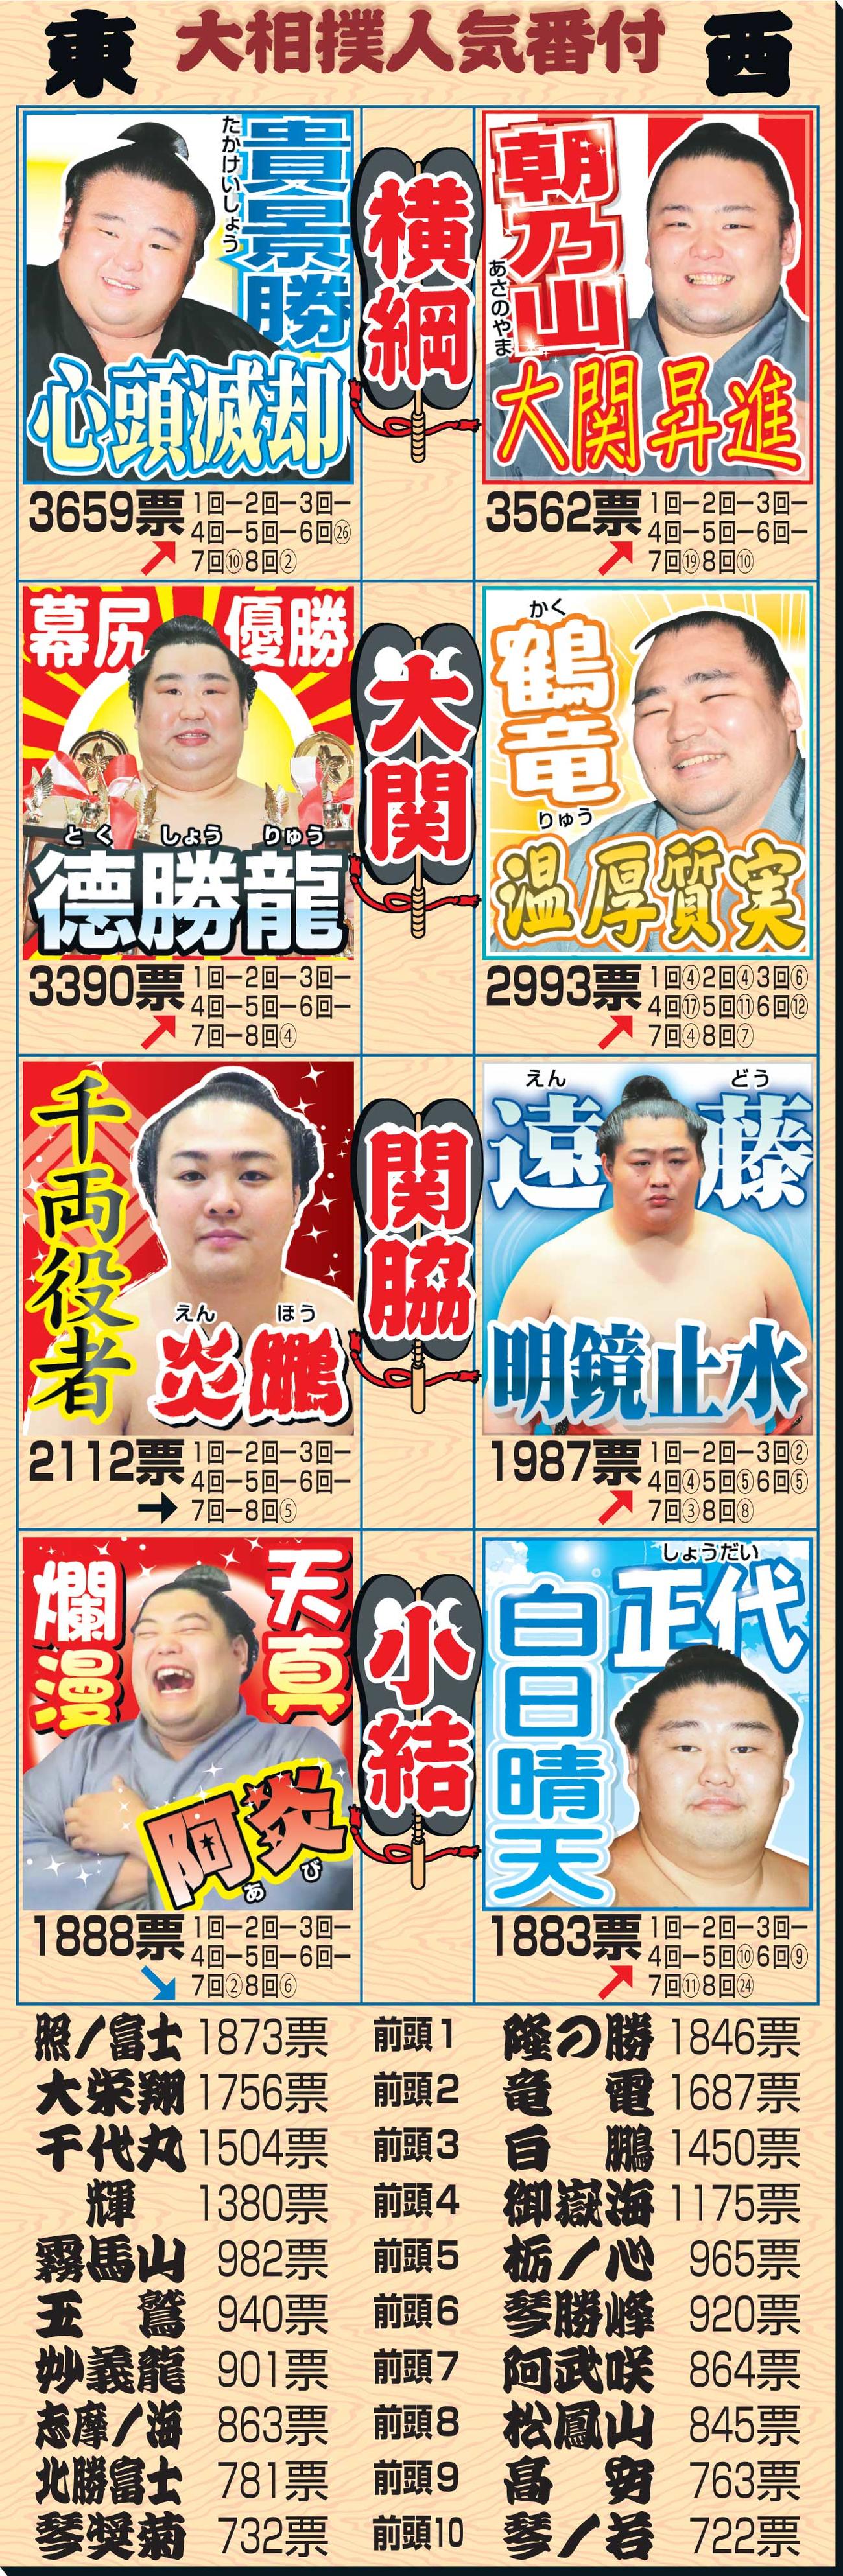 第9回大相撲総選挙の結果